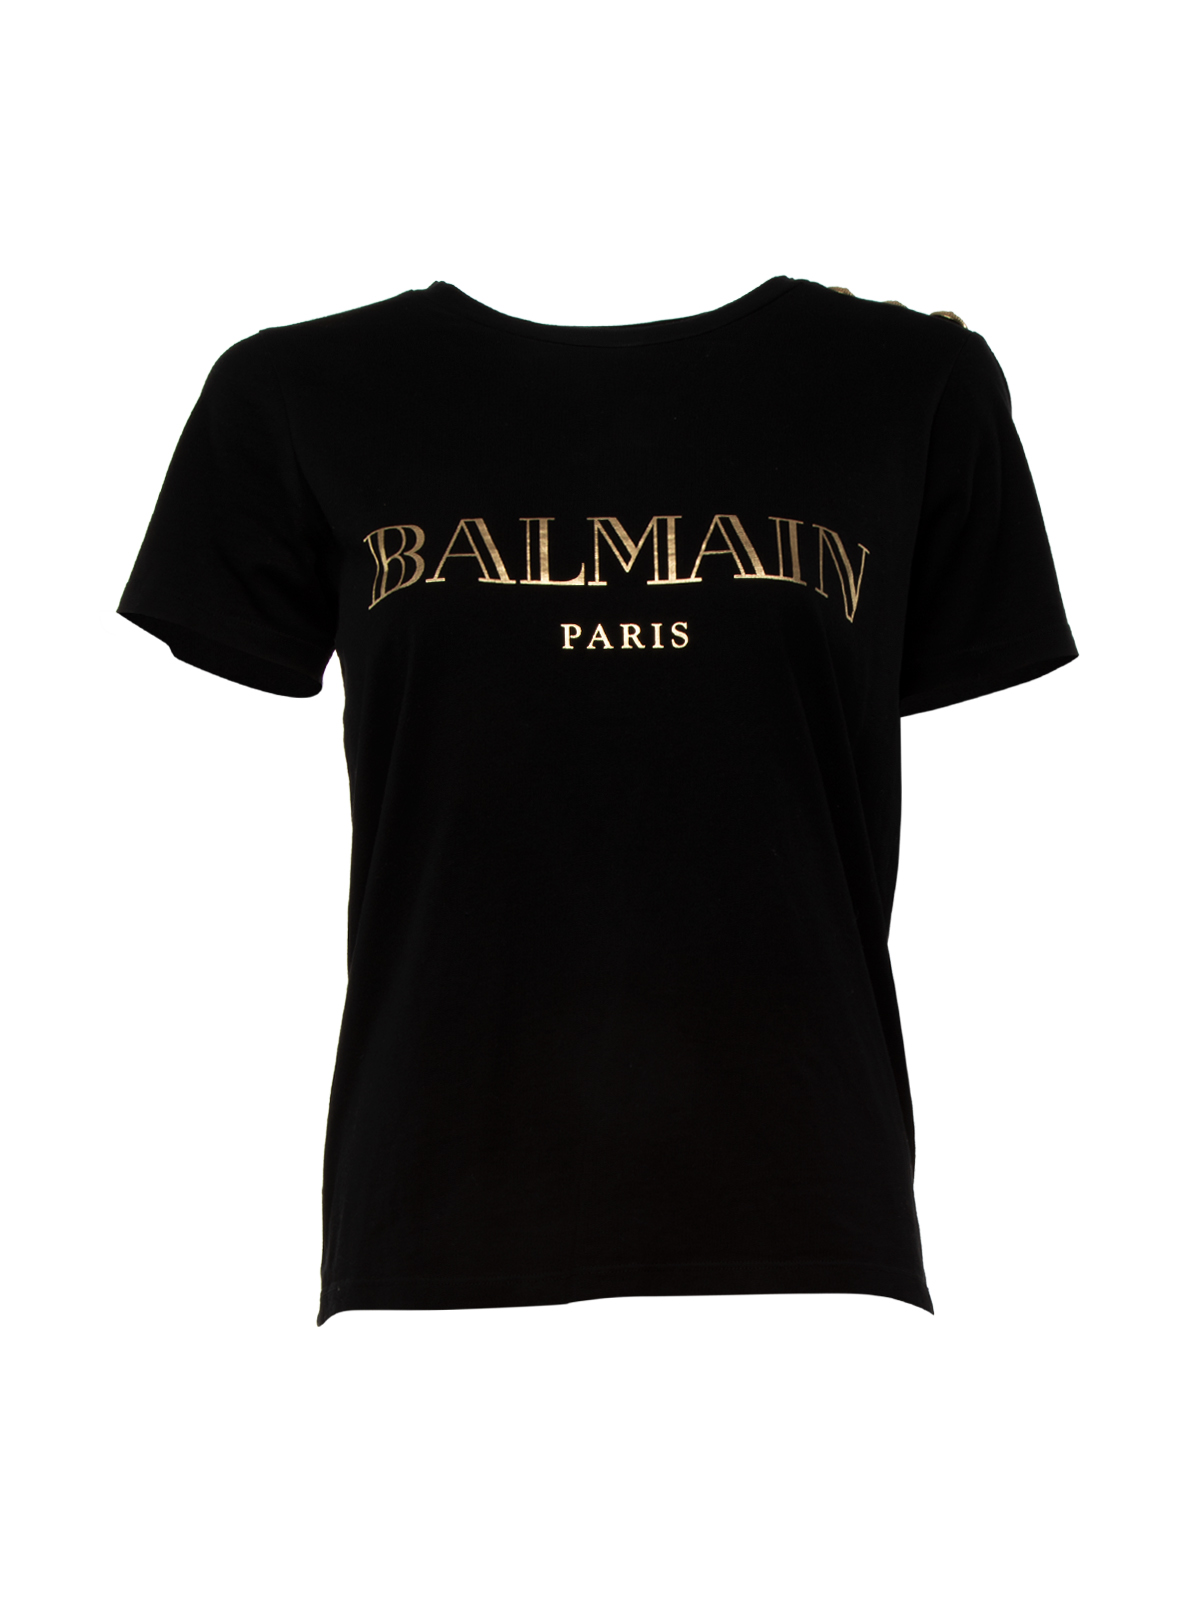 Balmain Balmain Text T-Shirt